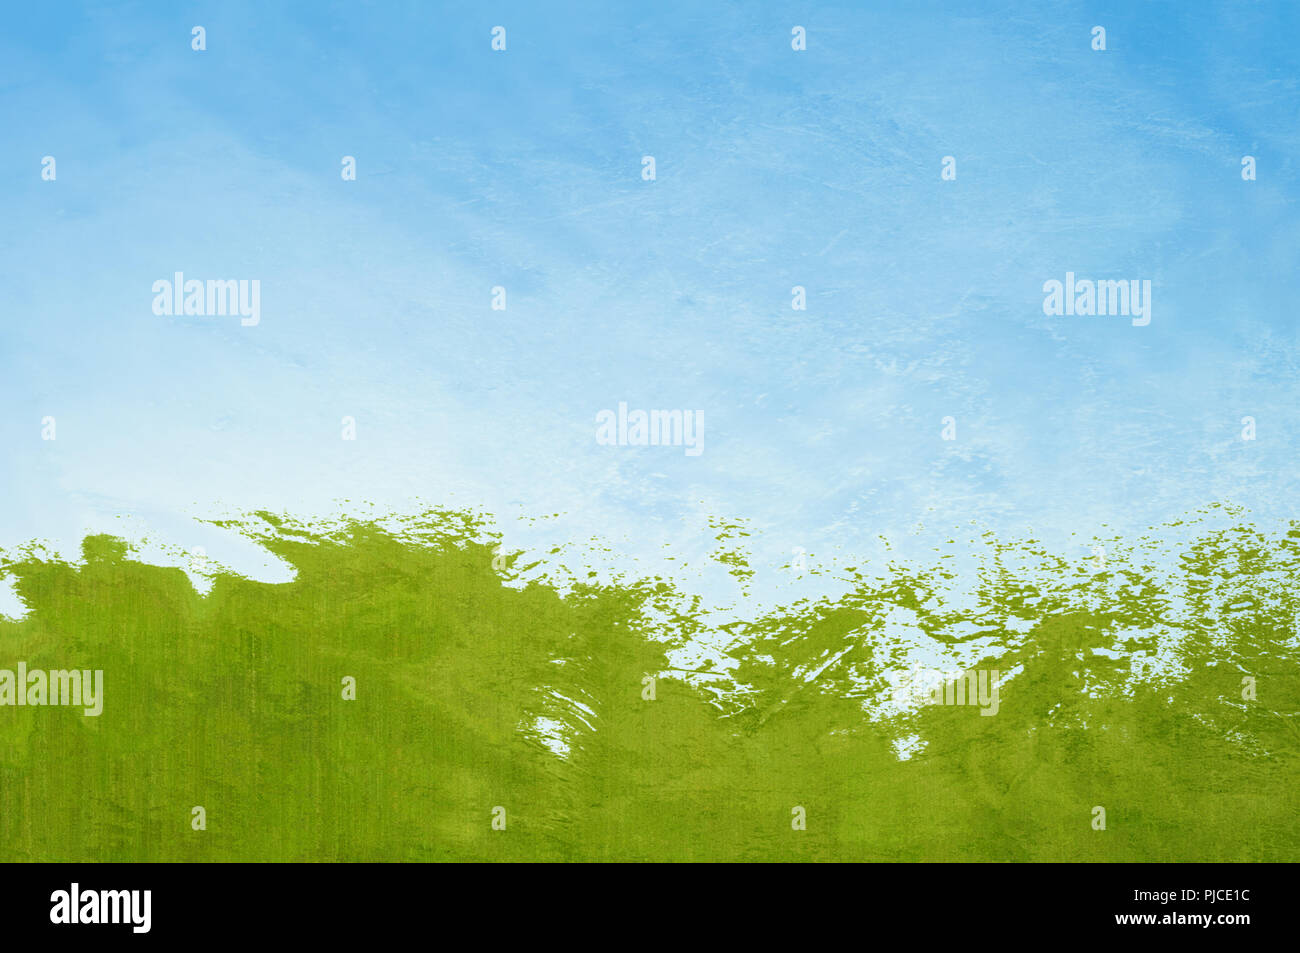 Abstrakte malerische Hintergrund ähnelt grünes Gras spritzen, als ob Wellen unter einem blauen Himmel mit dünnen Wolken. Stockfoto